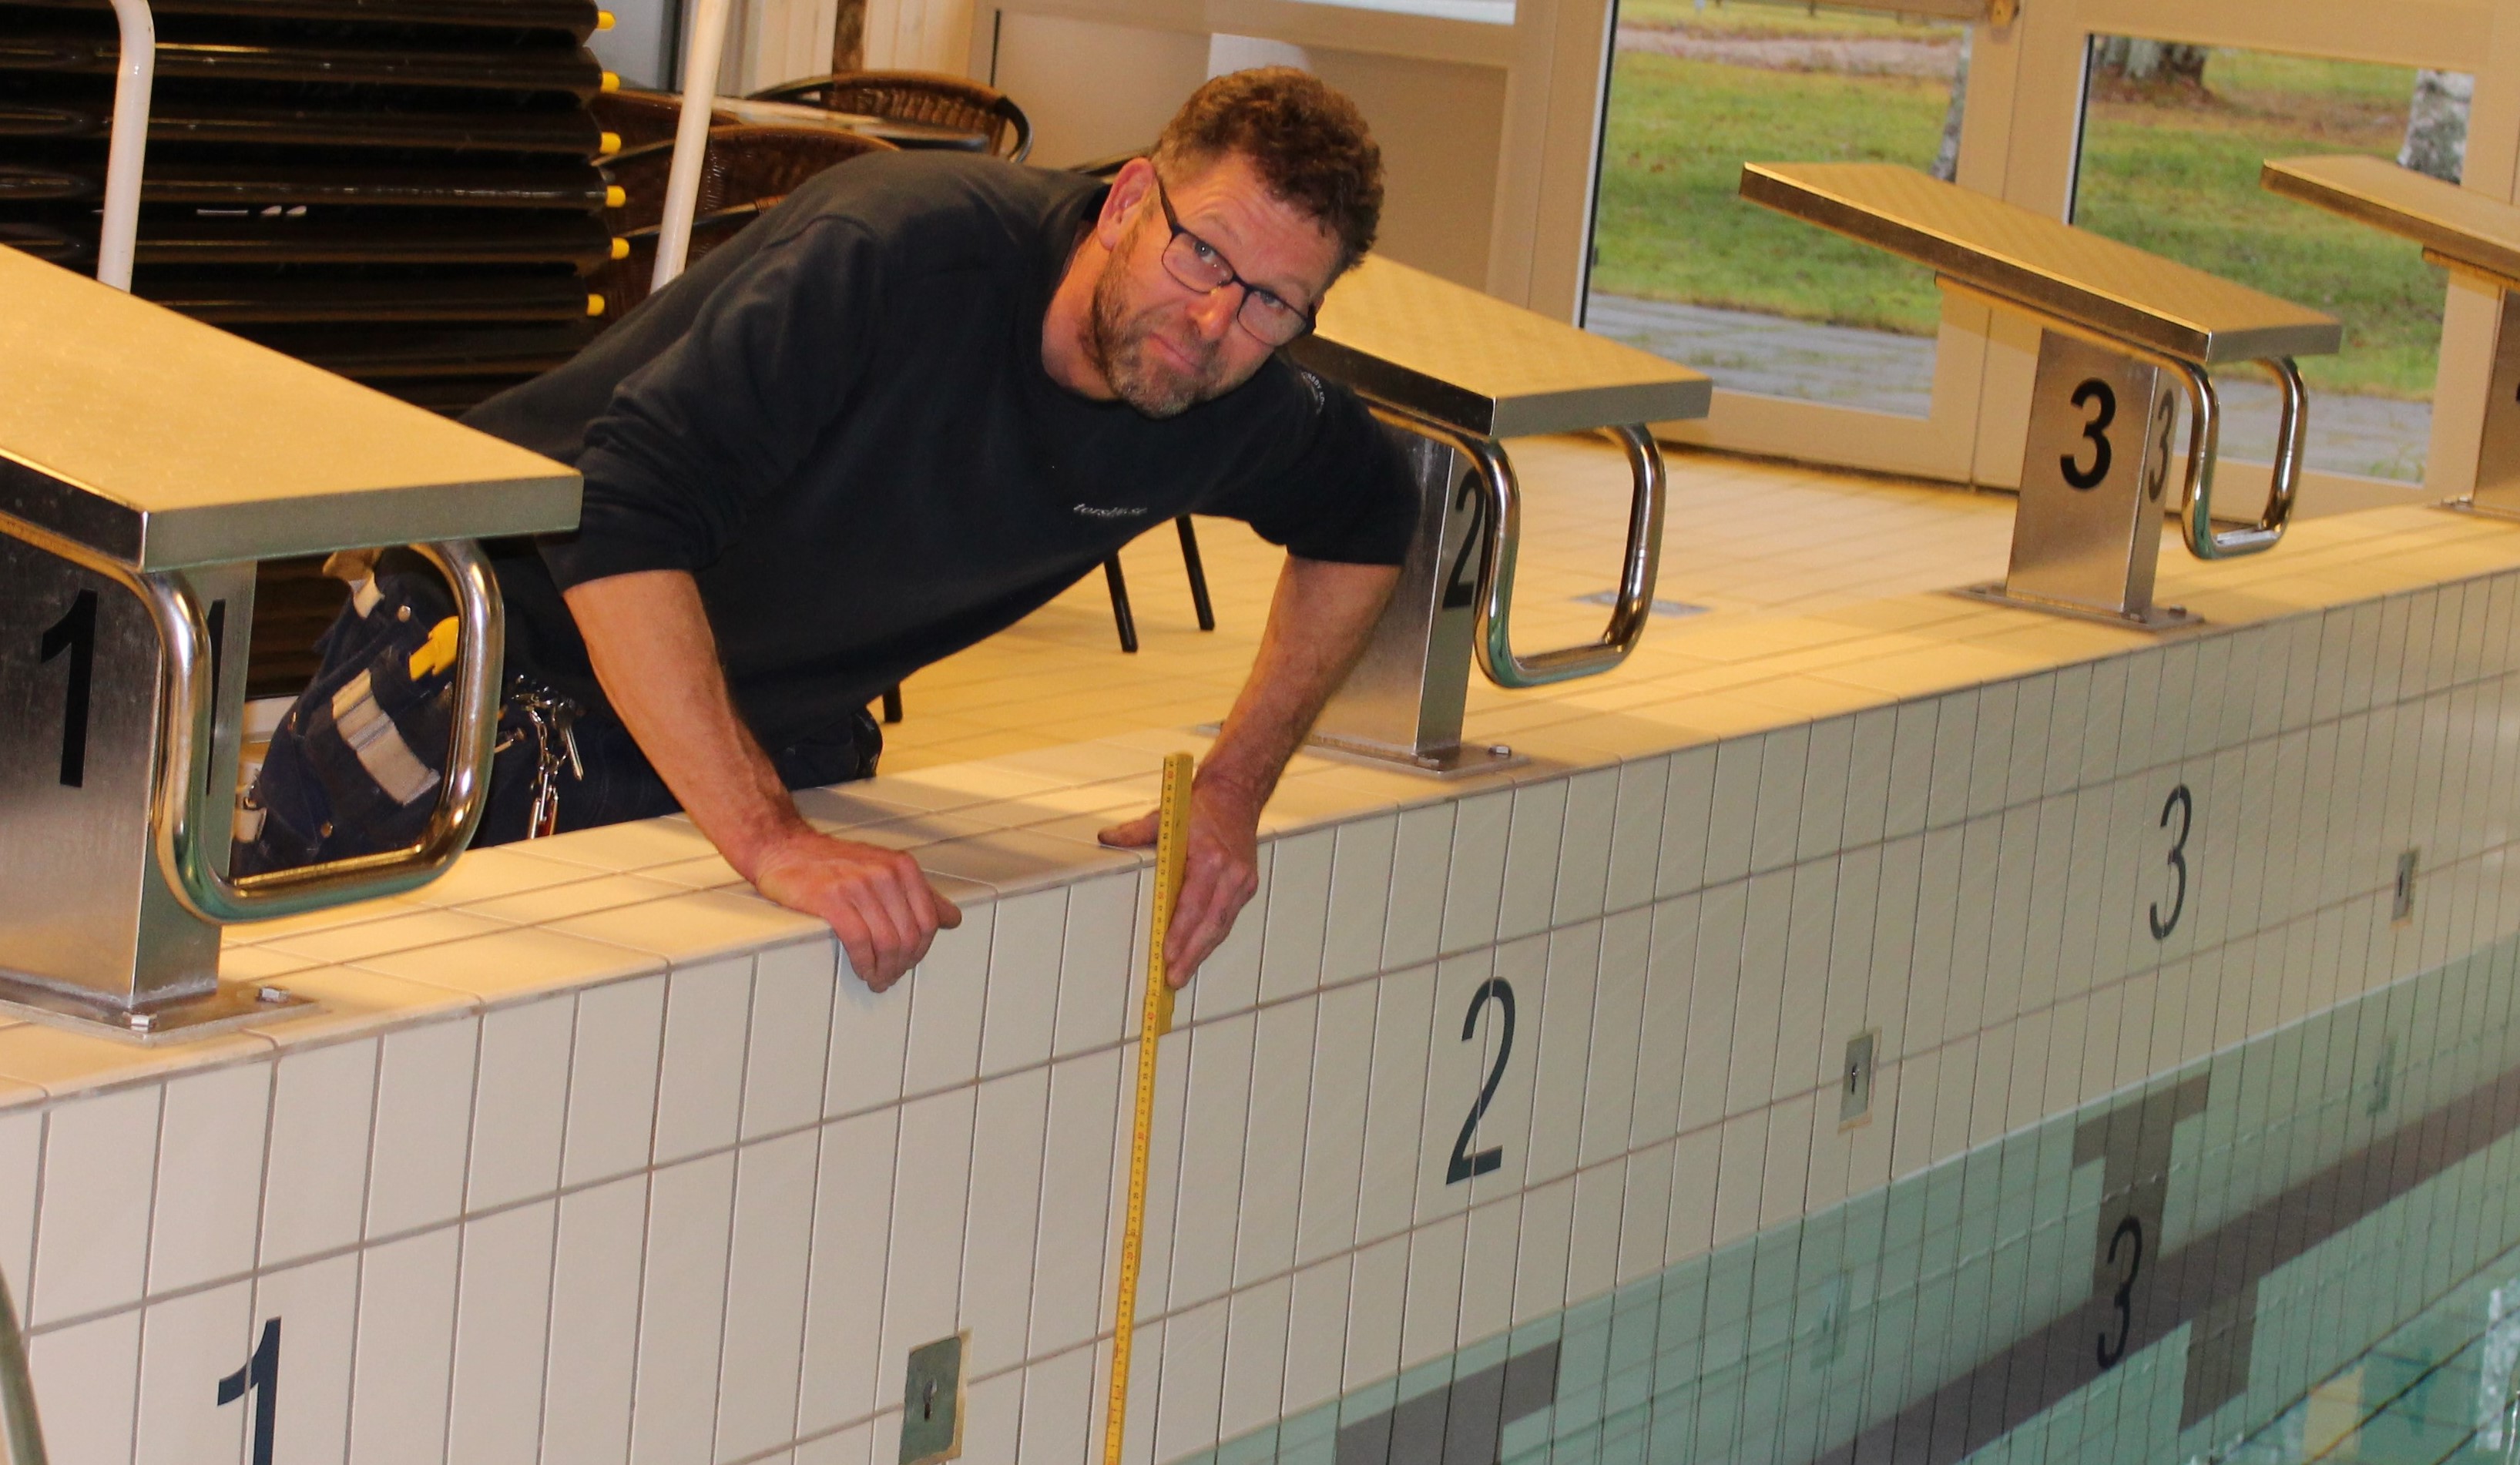 Vaktmästaren mäter vattennivån i bassängen